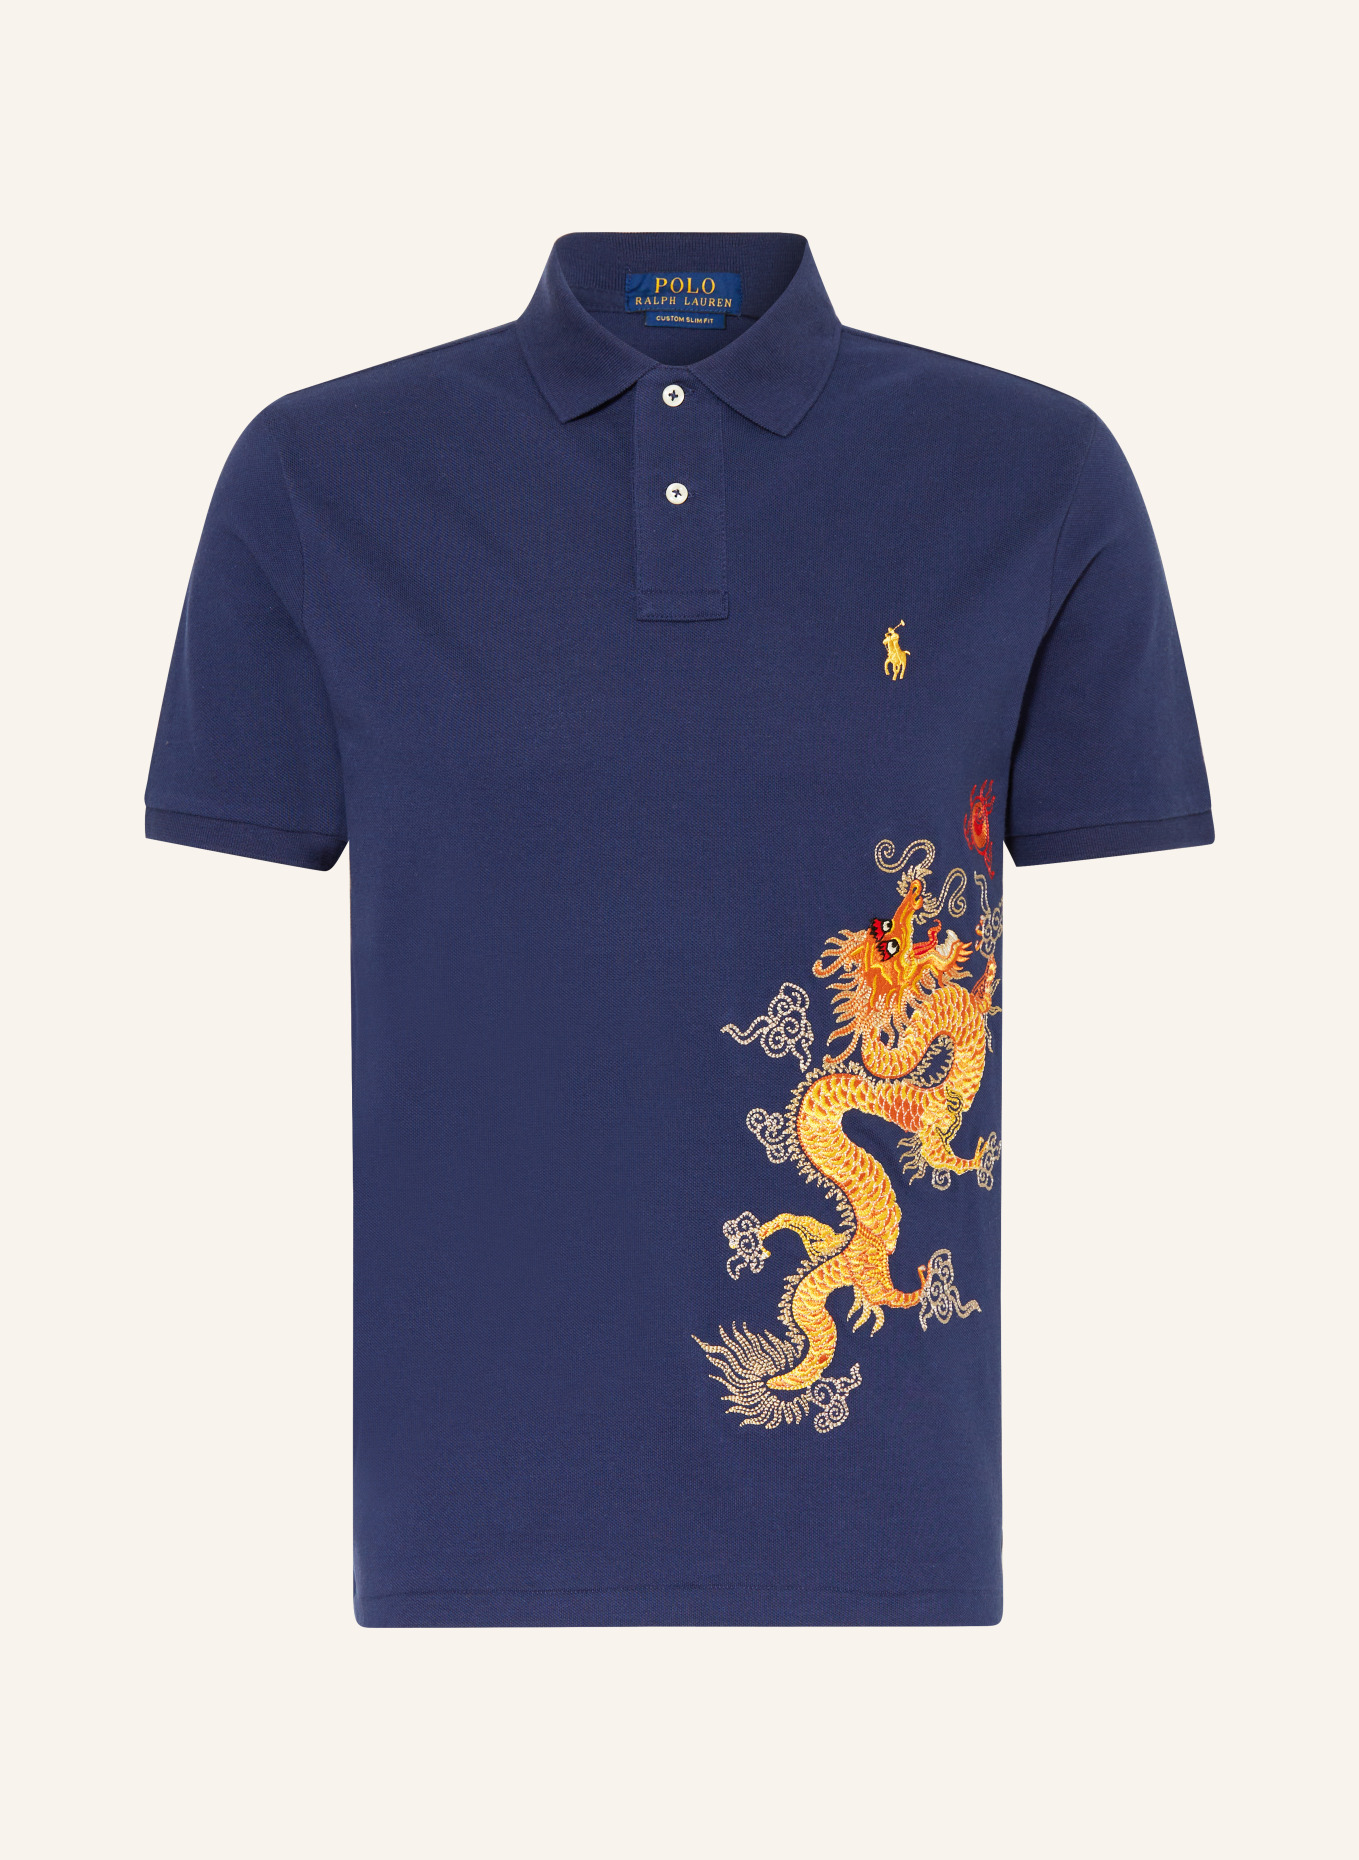 POLO RALPH LAUREN Piqué polo shirt, Color: DARK BLUE/ YELLOW/ ORANGE (Image 1)